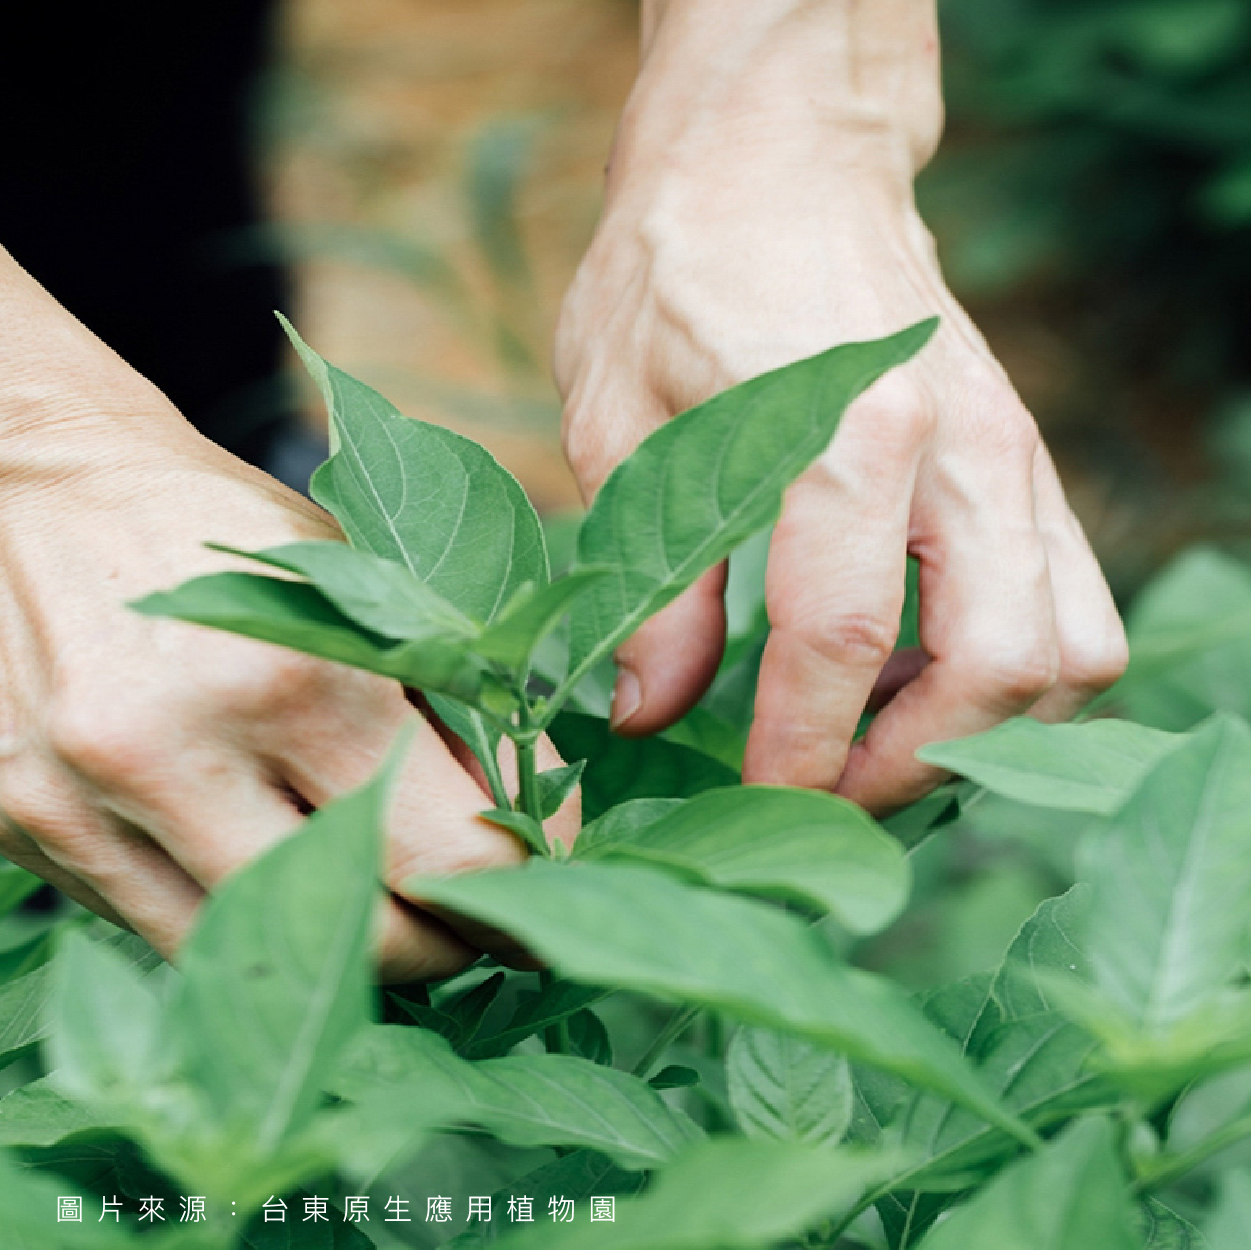 台東原生應用植物園  加味天麻養生包 有機天然草本香氣濃郁 甘甜不苦